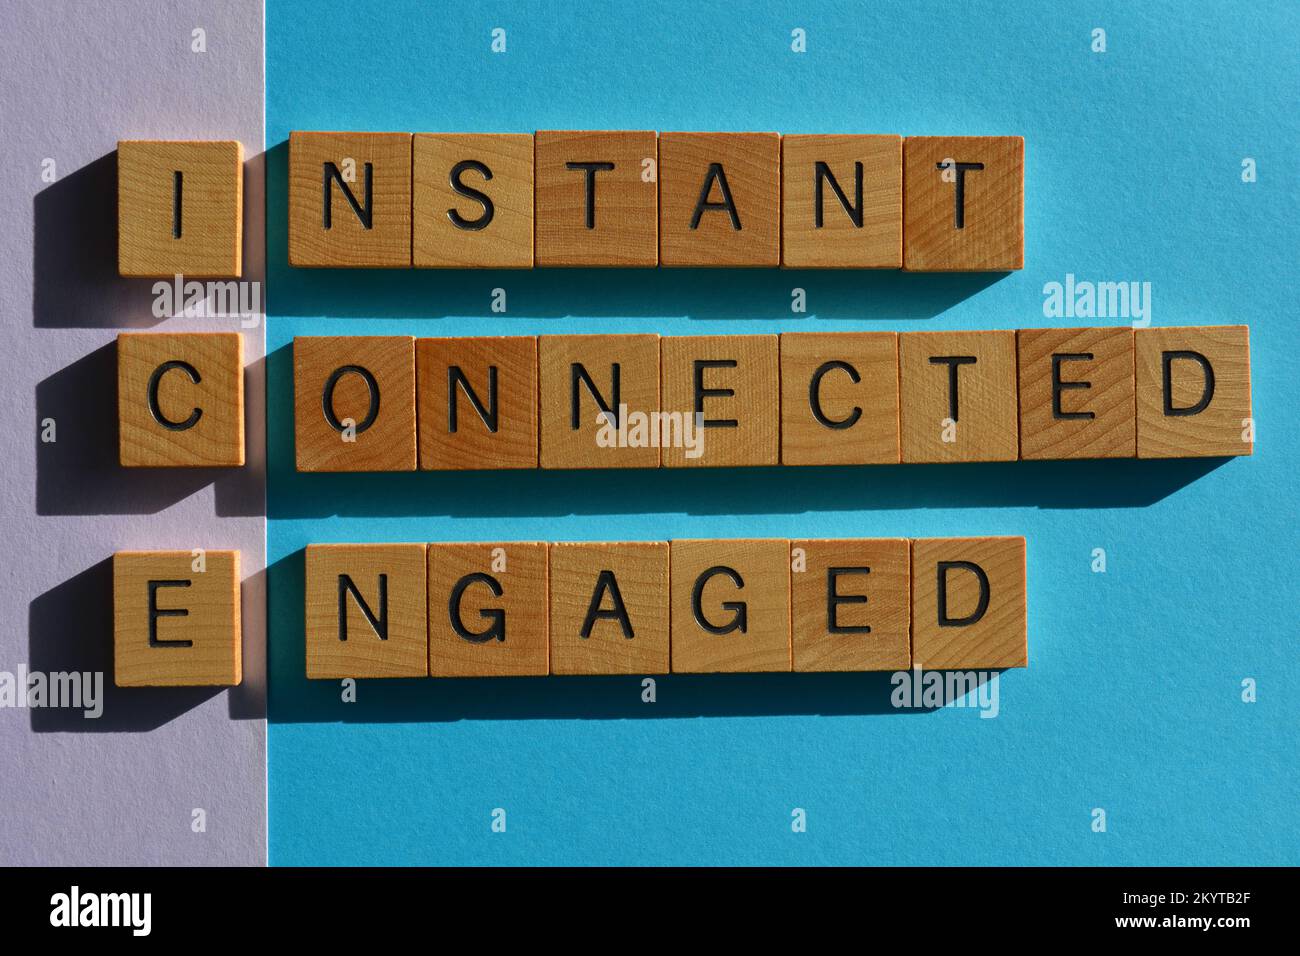 ICE-Akronym für Instant Connected Engaged, Marketing-Schlagwörter in hölzernen Buchstaben, die auf dem Hintergrund gleichgesetzt sind Stockfoto